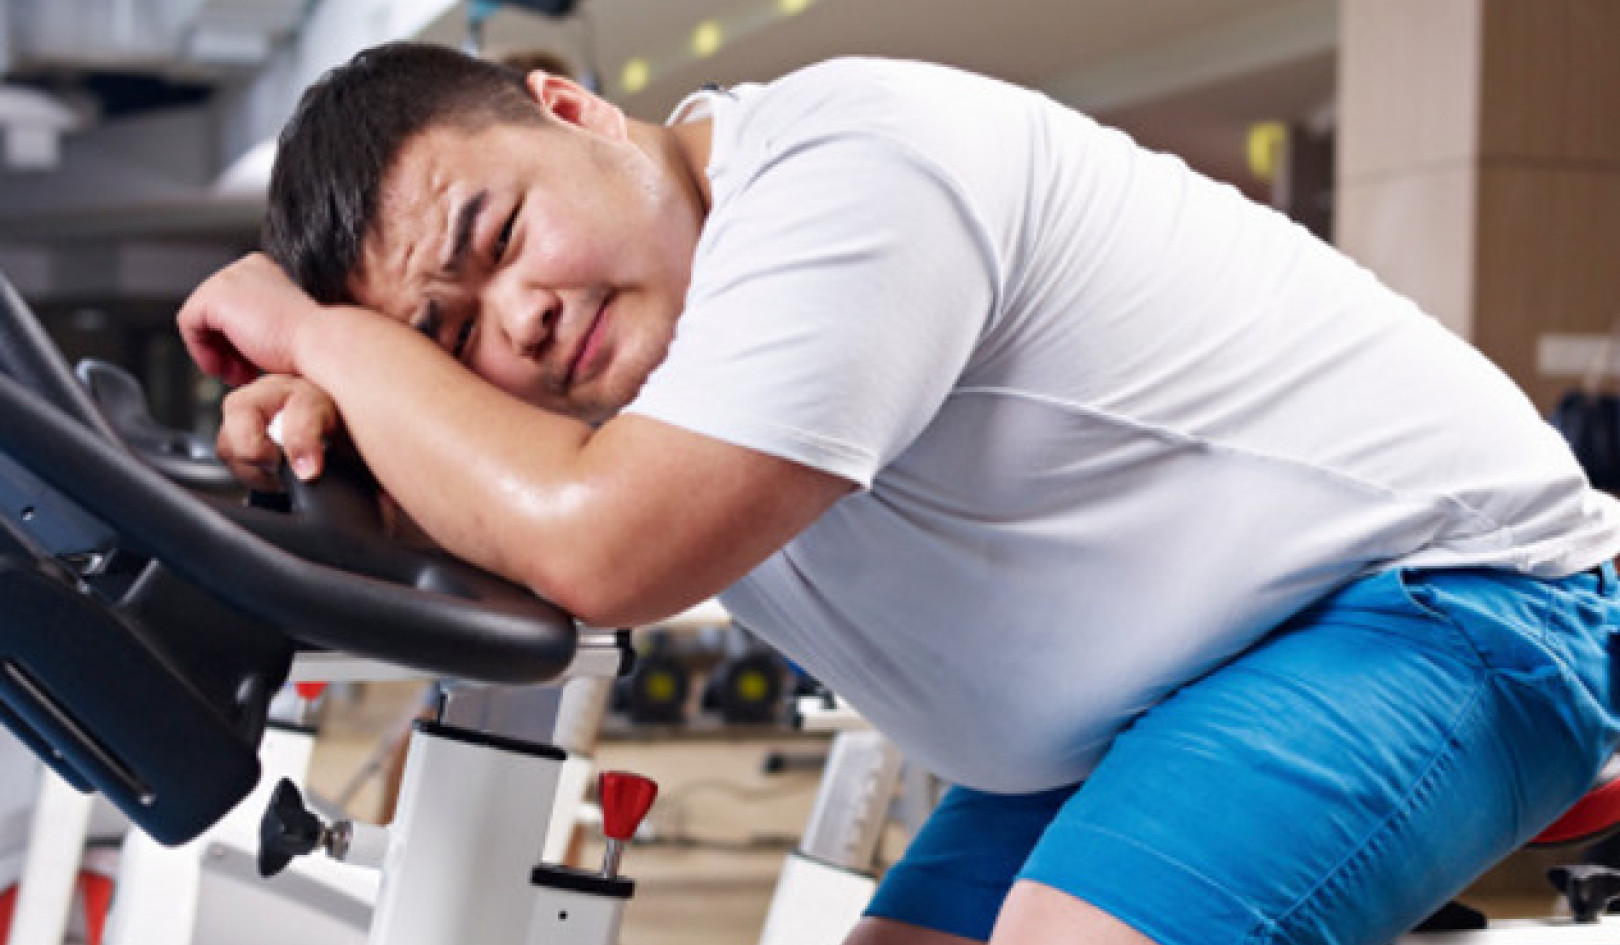 Η συζήτηση για την άσκηση και την απώλεια βάρους: αποδείξεις και για τις δύο πλευρές